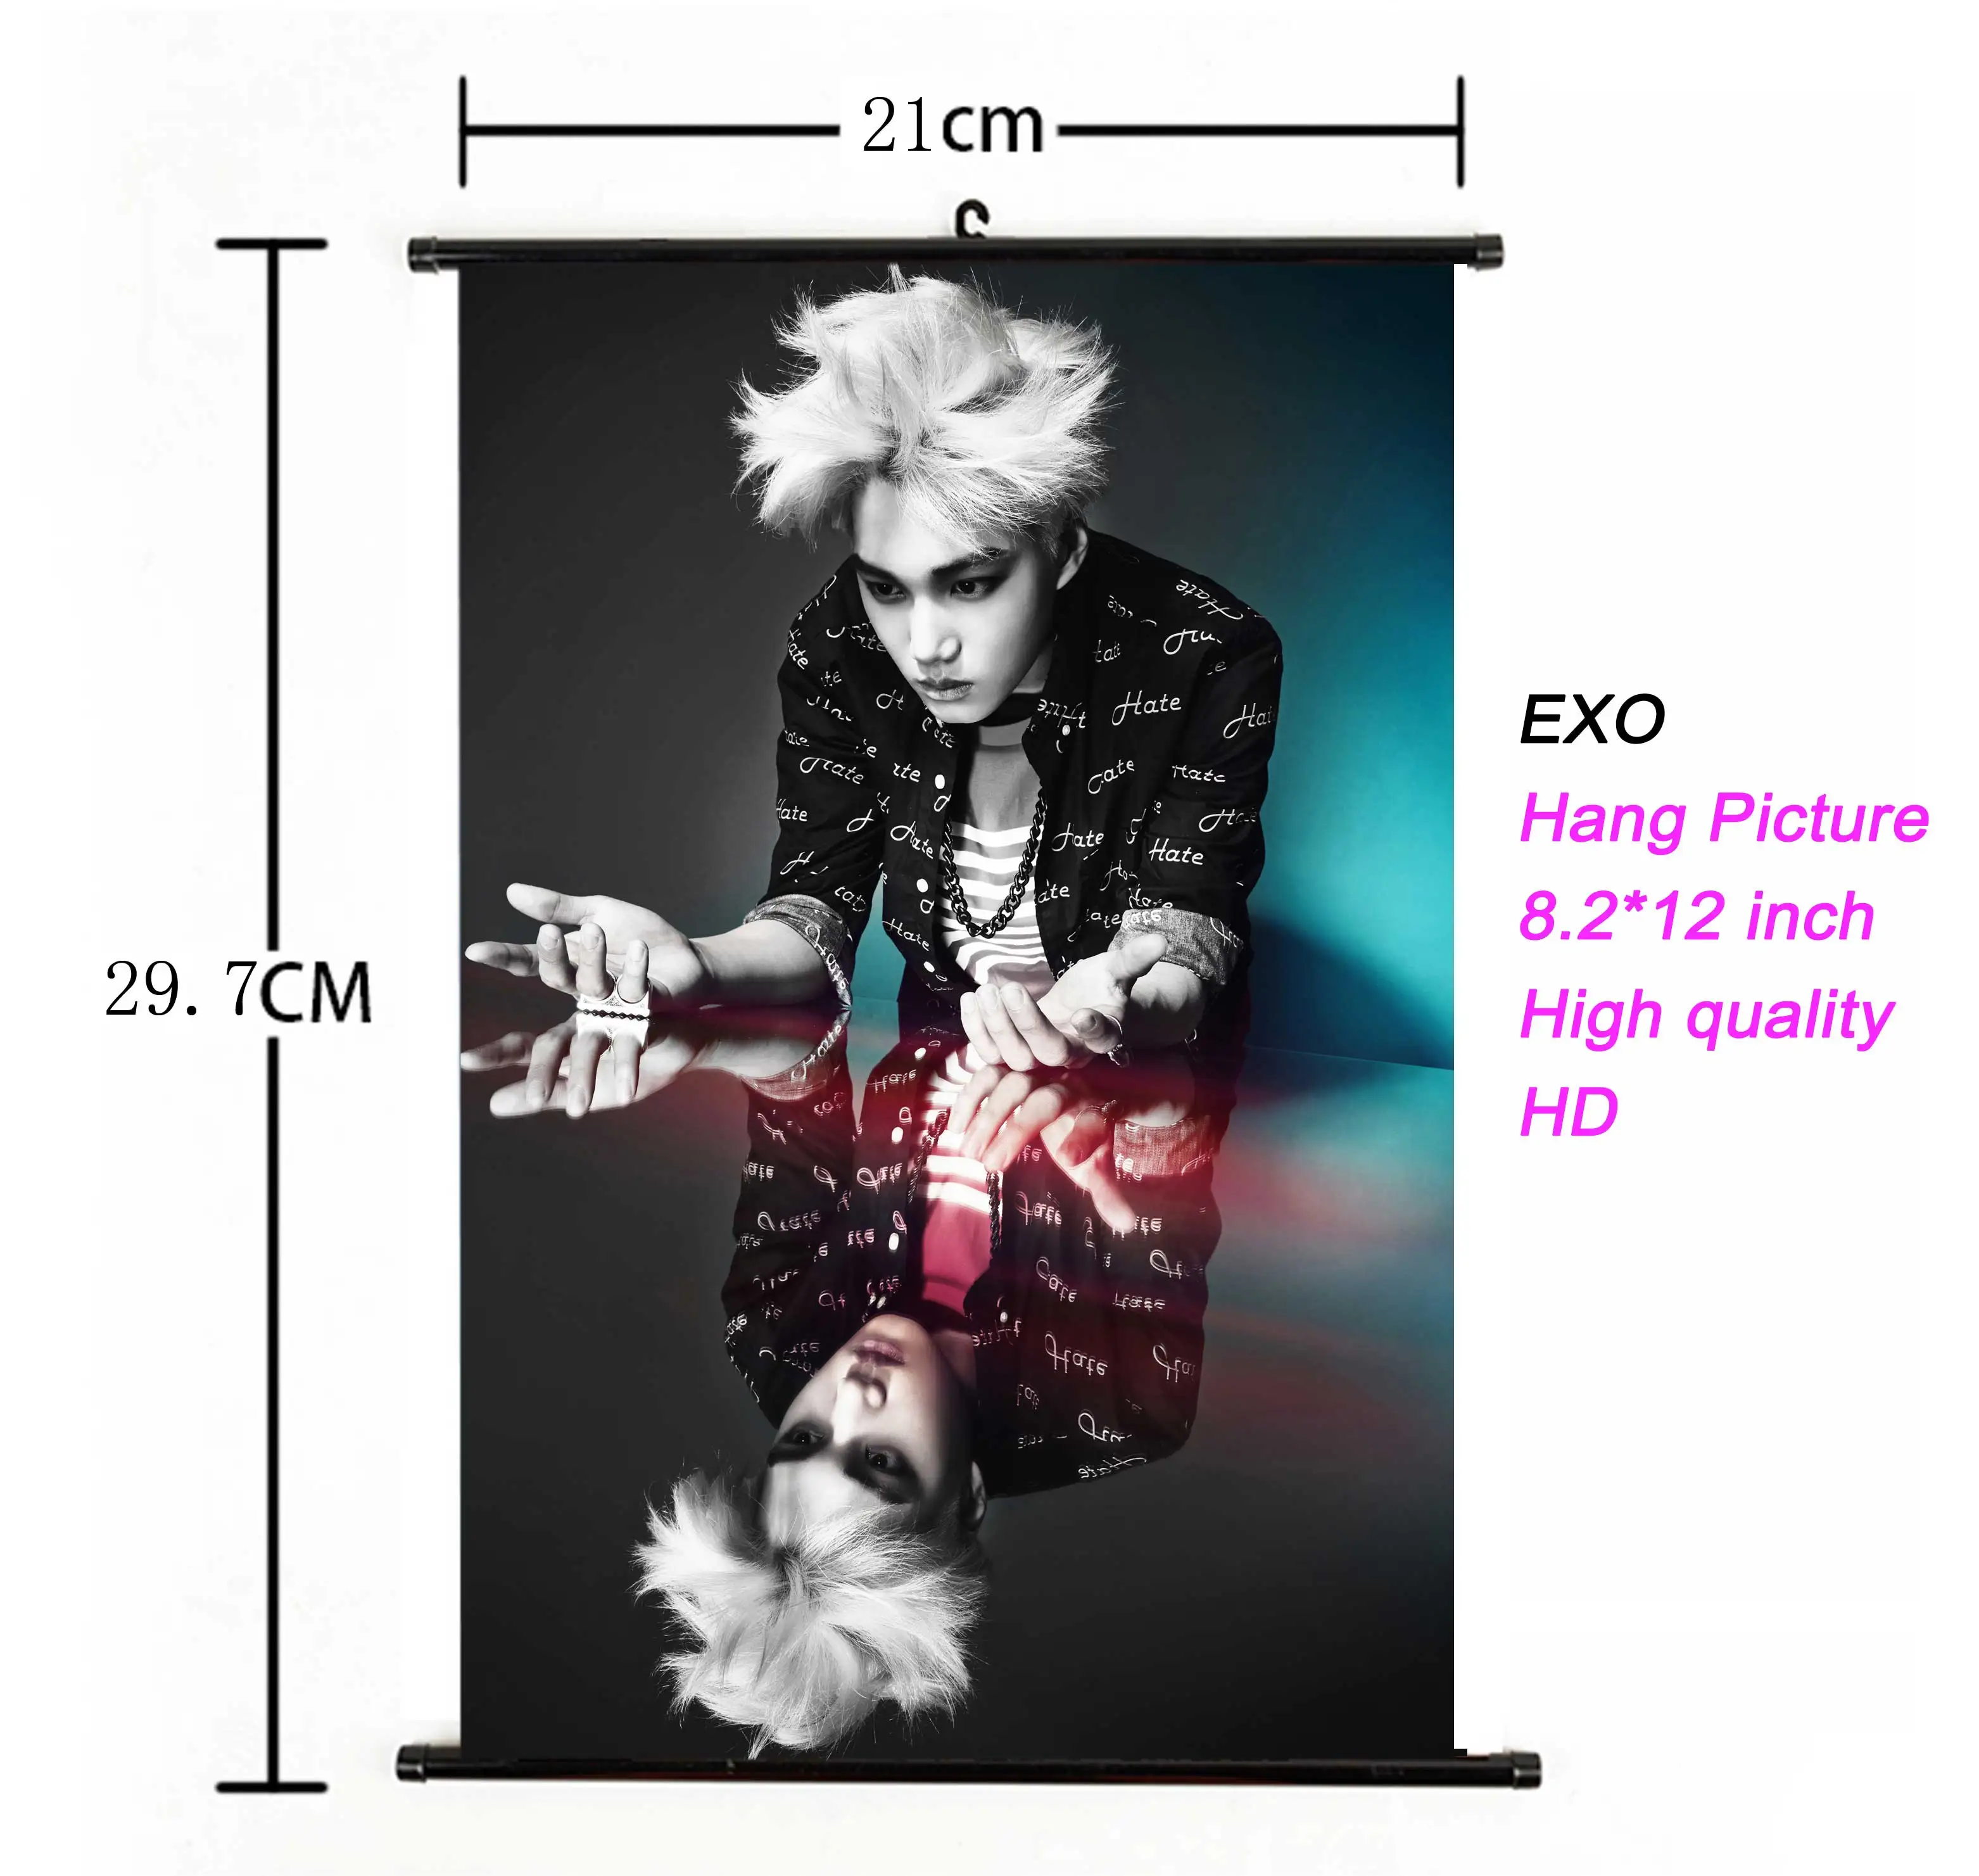 Kpop EXO висячий плакат для поклонников коллекции подарков ткань 21*30 см Высокое качество k-pop EXO альбом висячая картина фото плакат